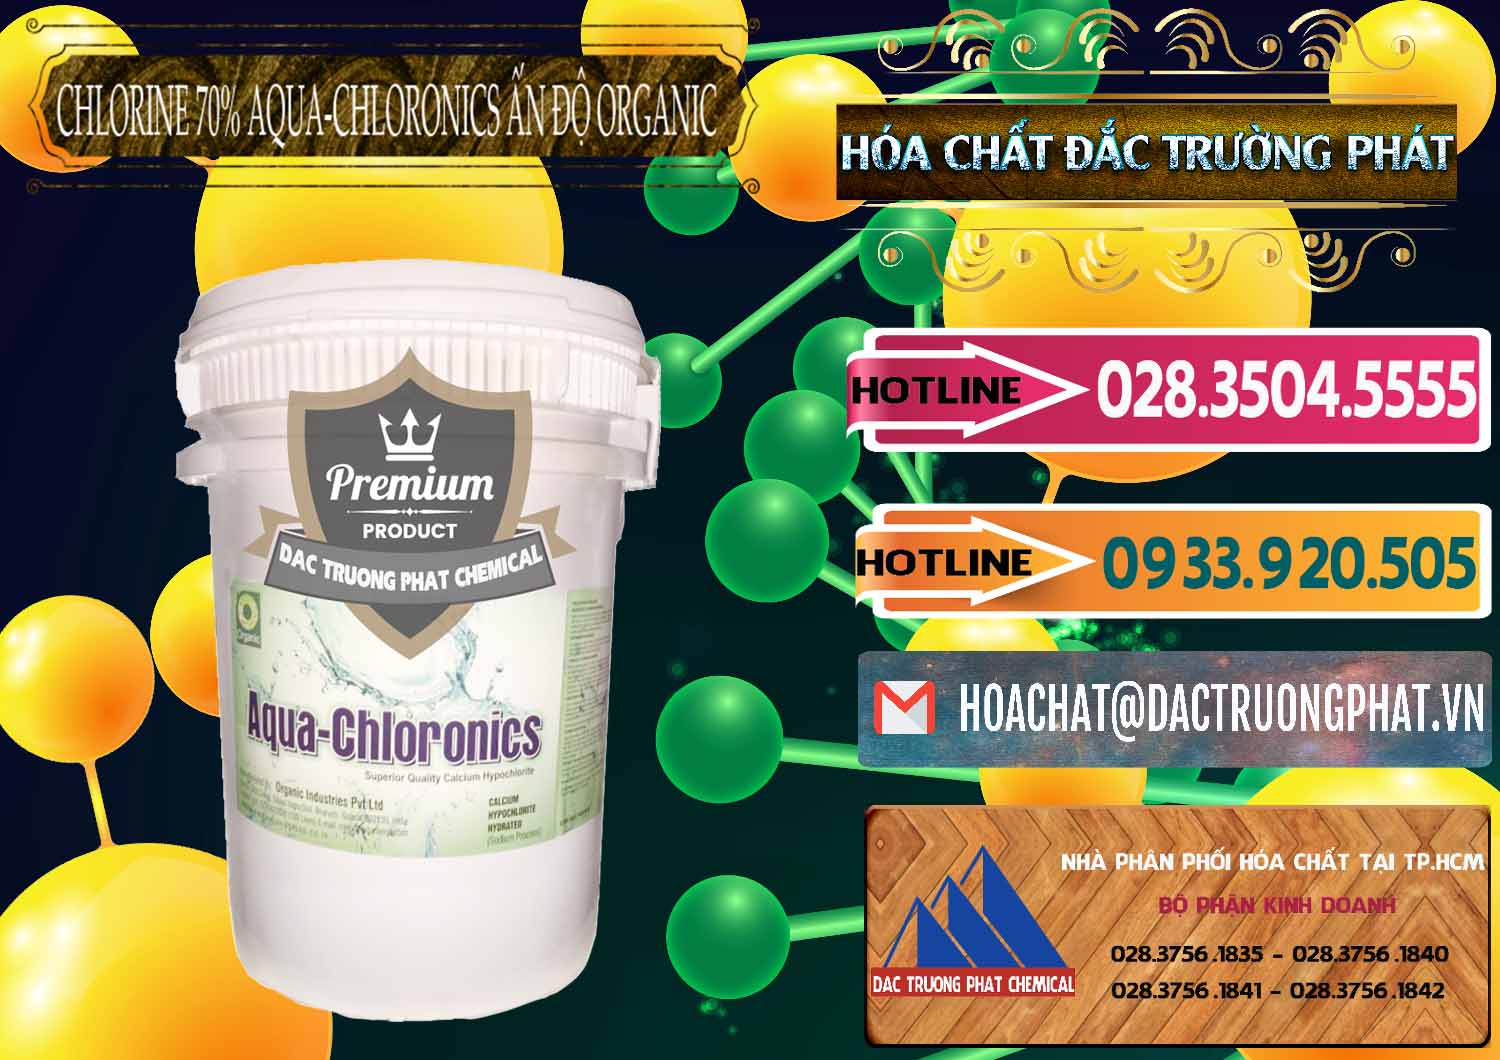 Chuyên kinh doanh & bán Chlorine – Clorin 70% Aqua-Chloronics Ấn Độ Organic India - 0211 - Cty bán _ cung cấp hóa chất tại TP.HCM - dactruongphat.vn